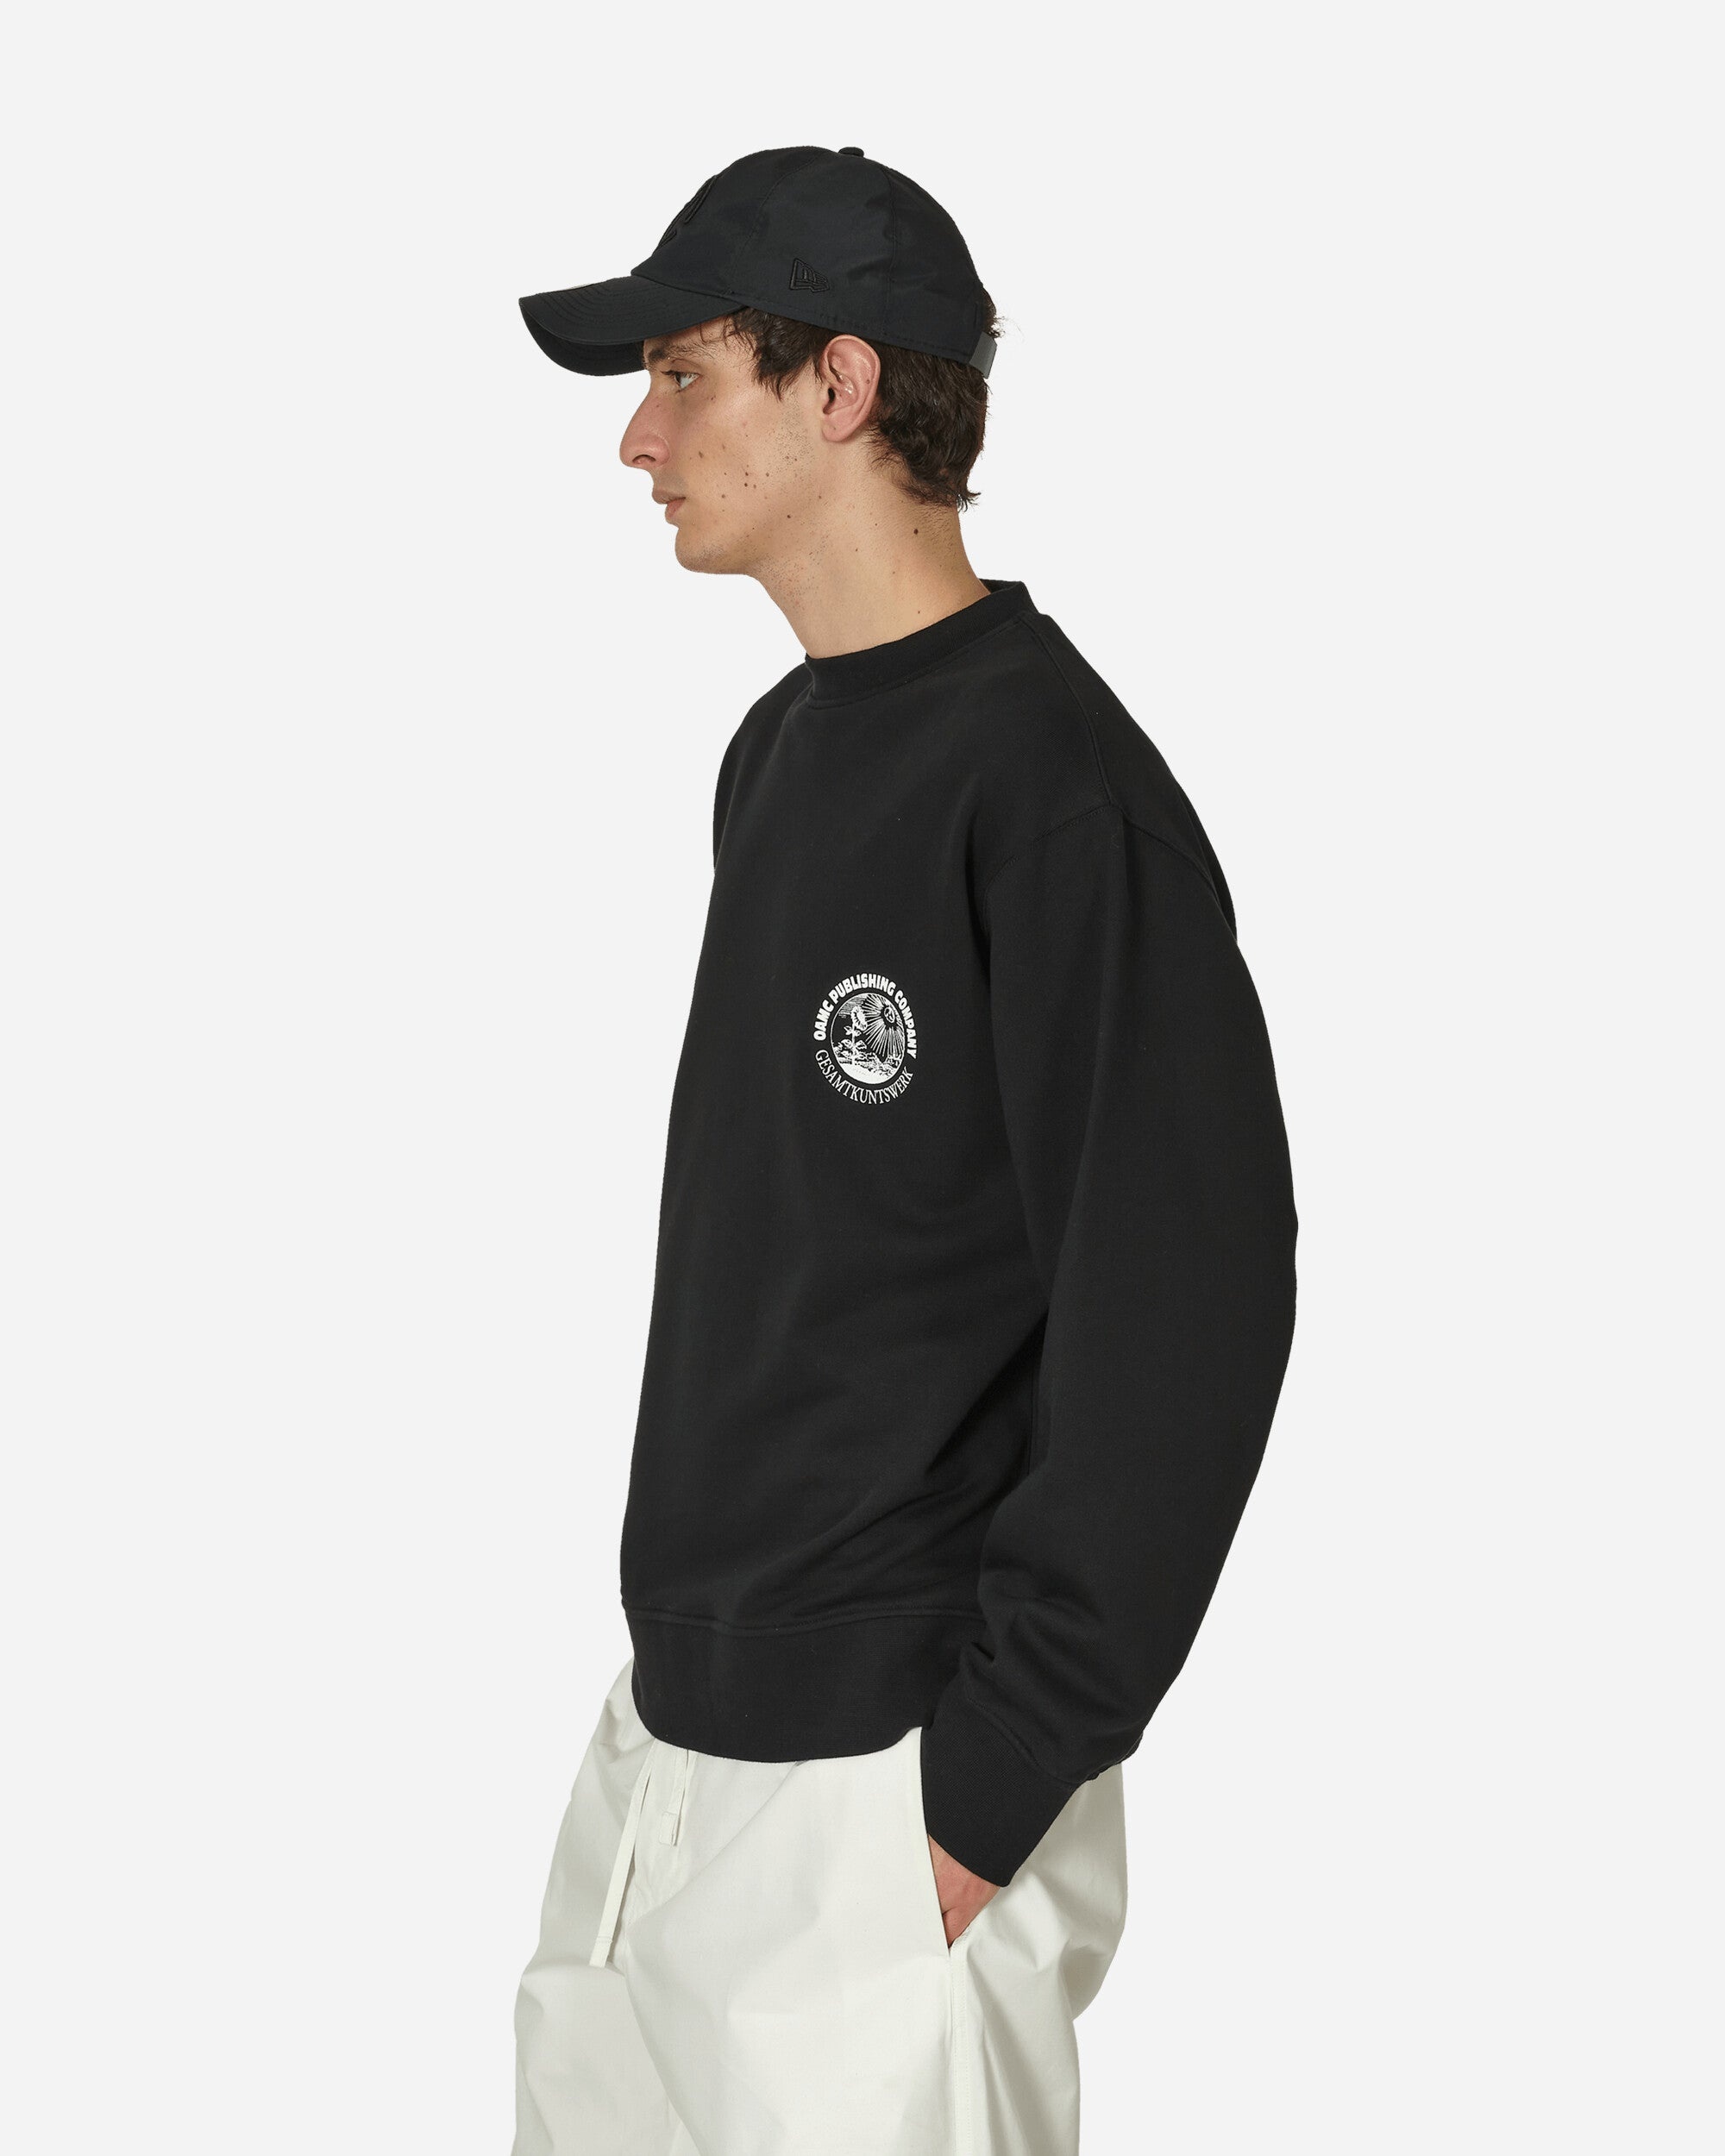 Apollo Crewneck Sweatshirt Black - 2